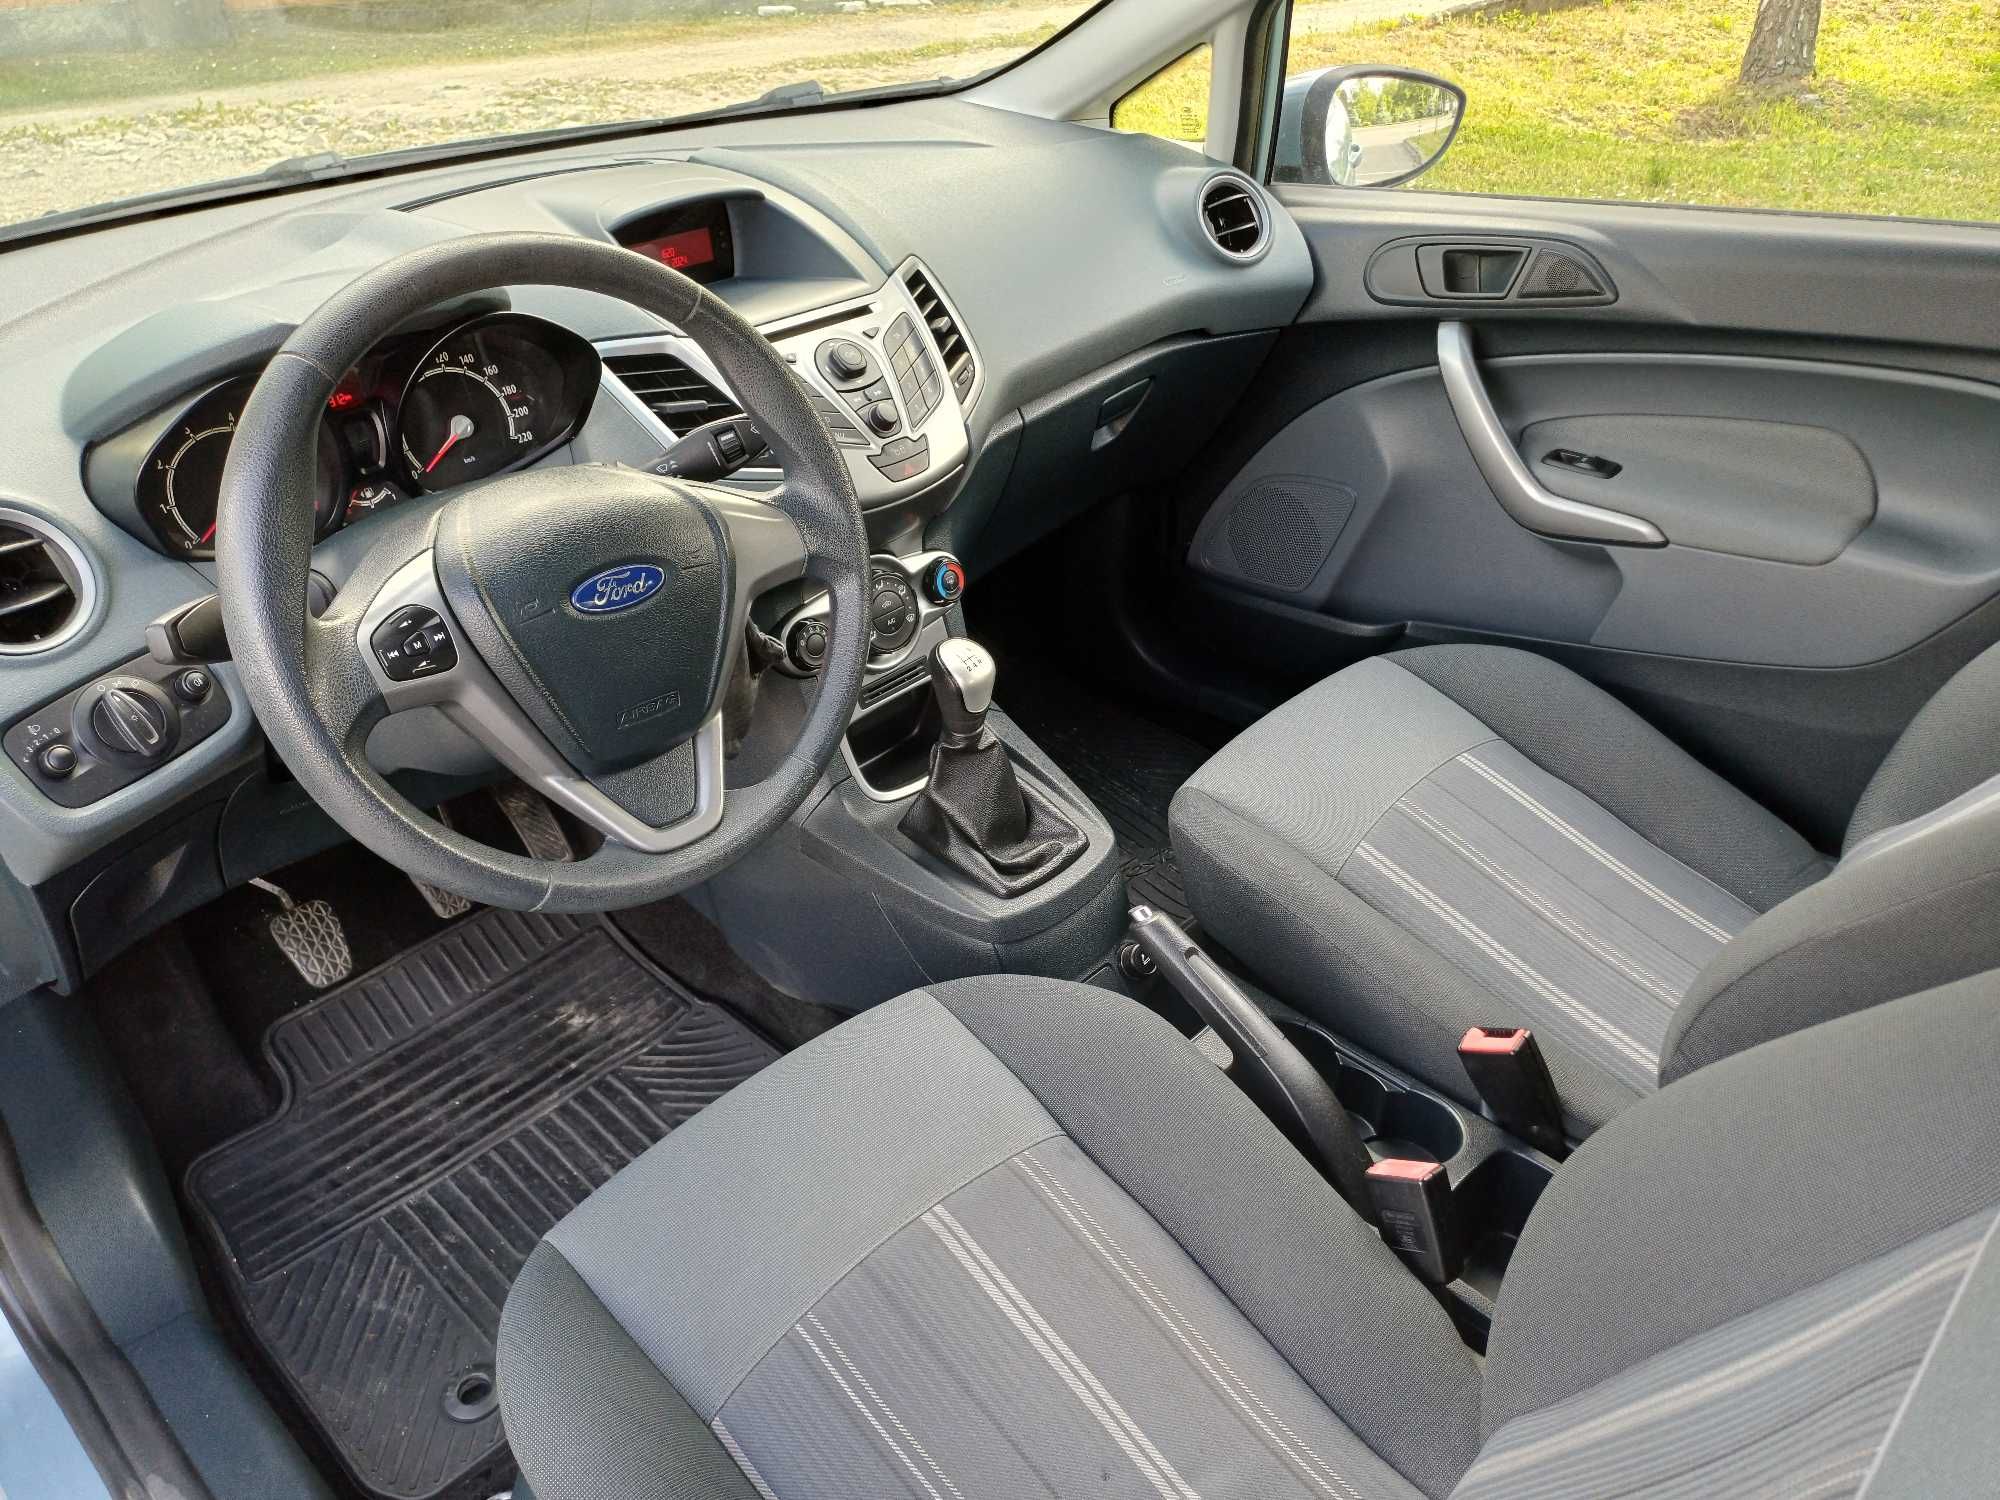 Ford Fiesta 2008R Benzyna 1.25 16V 82KM Z NIEMIEC